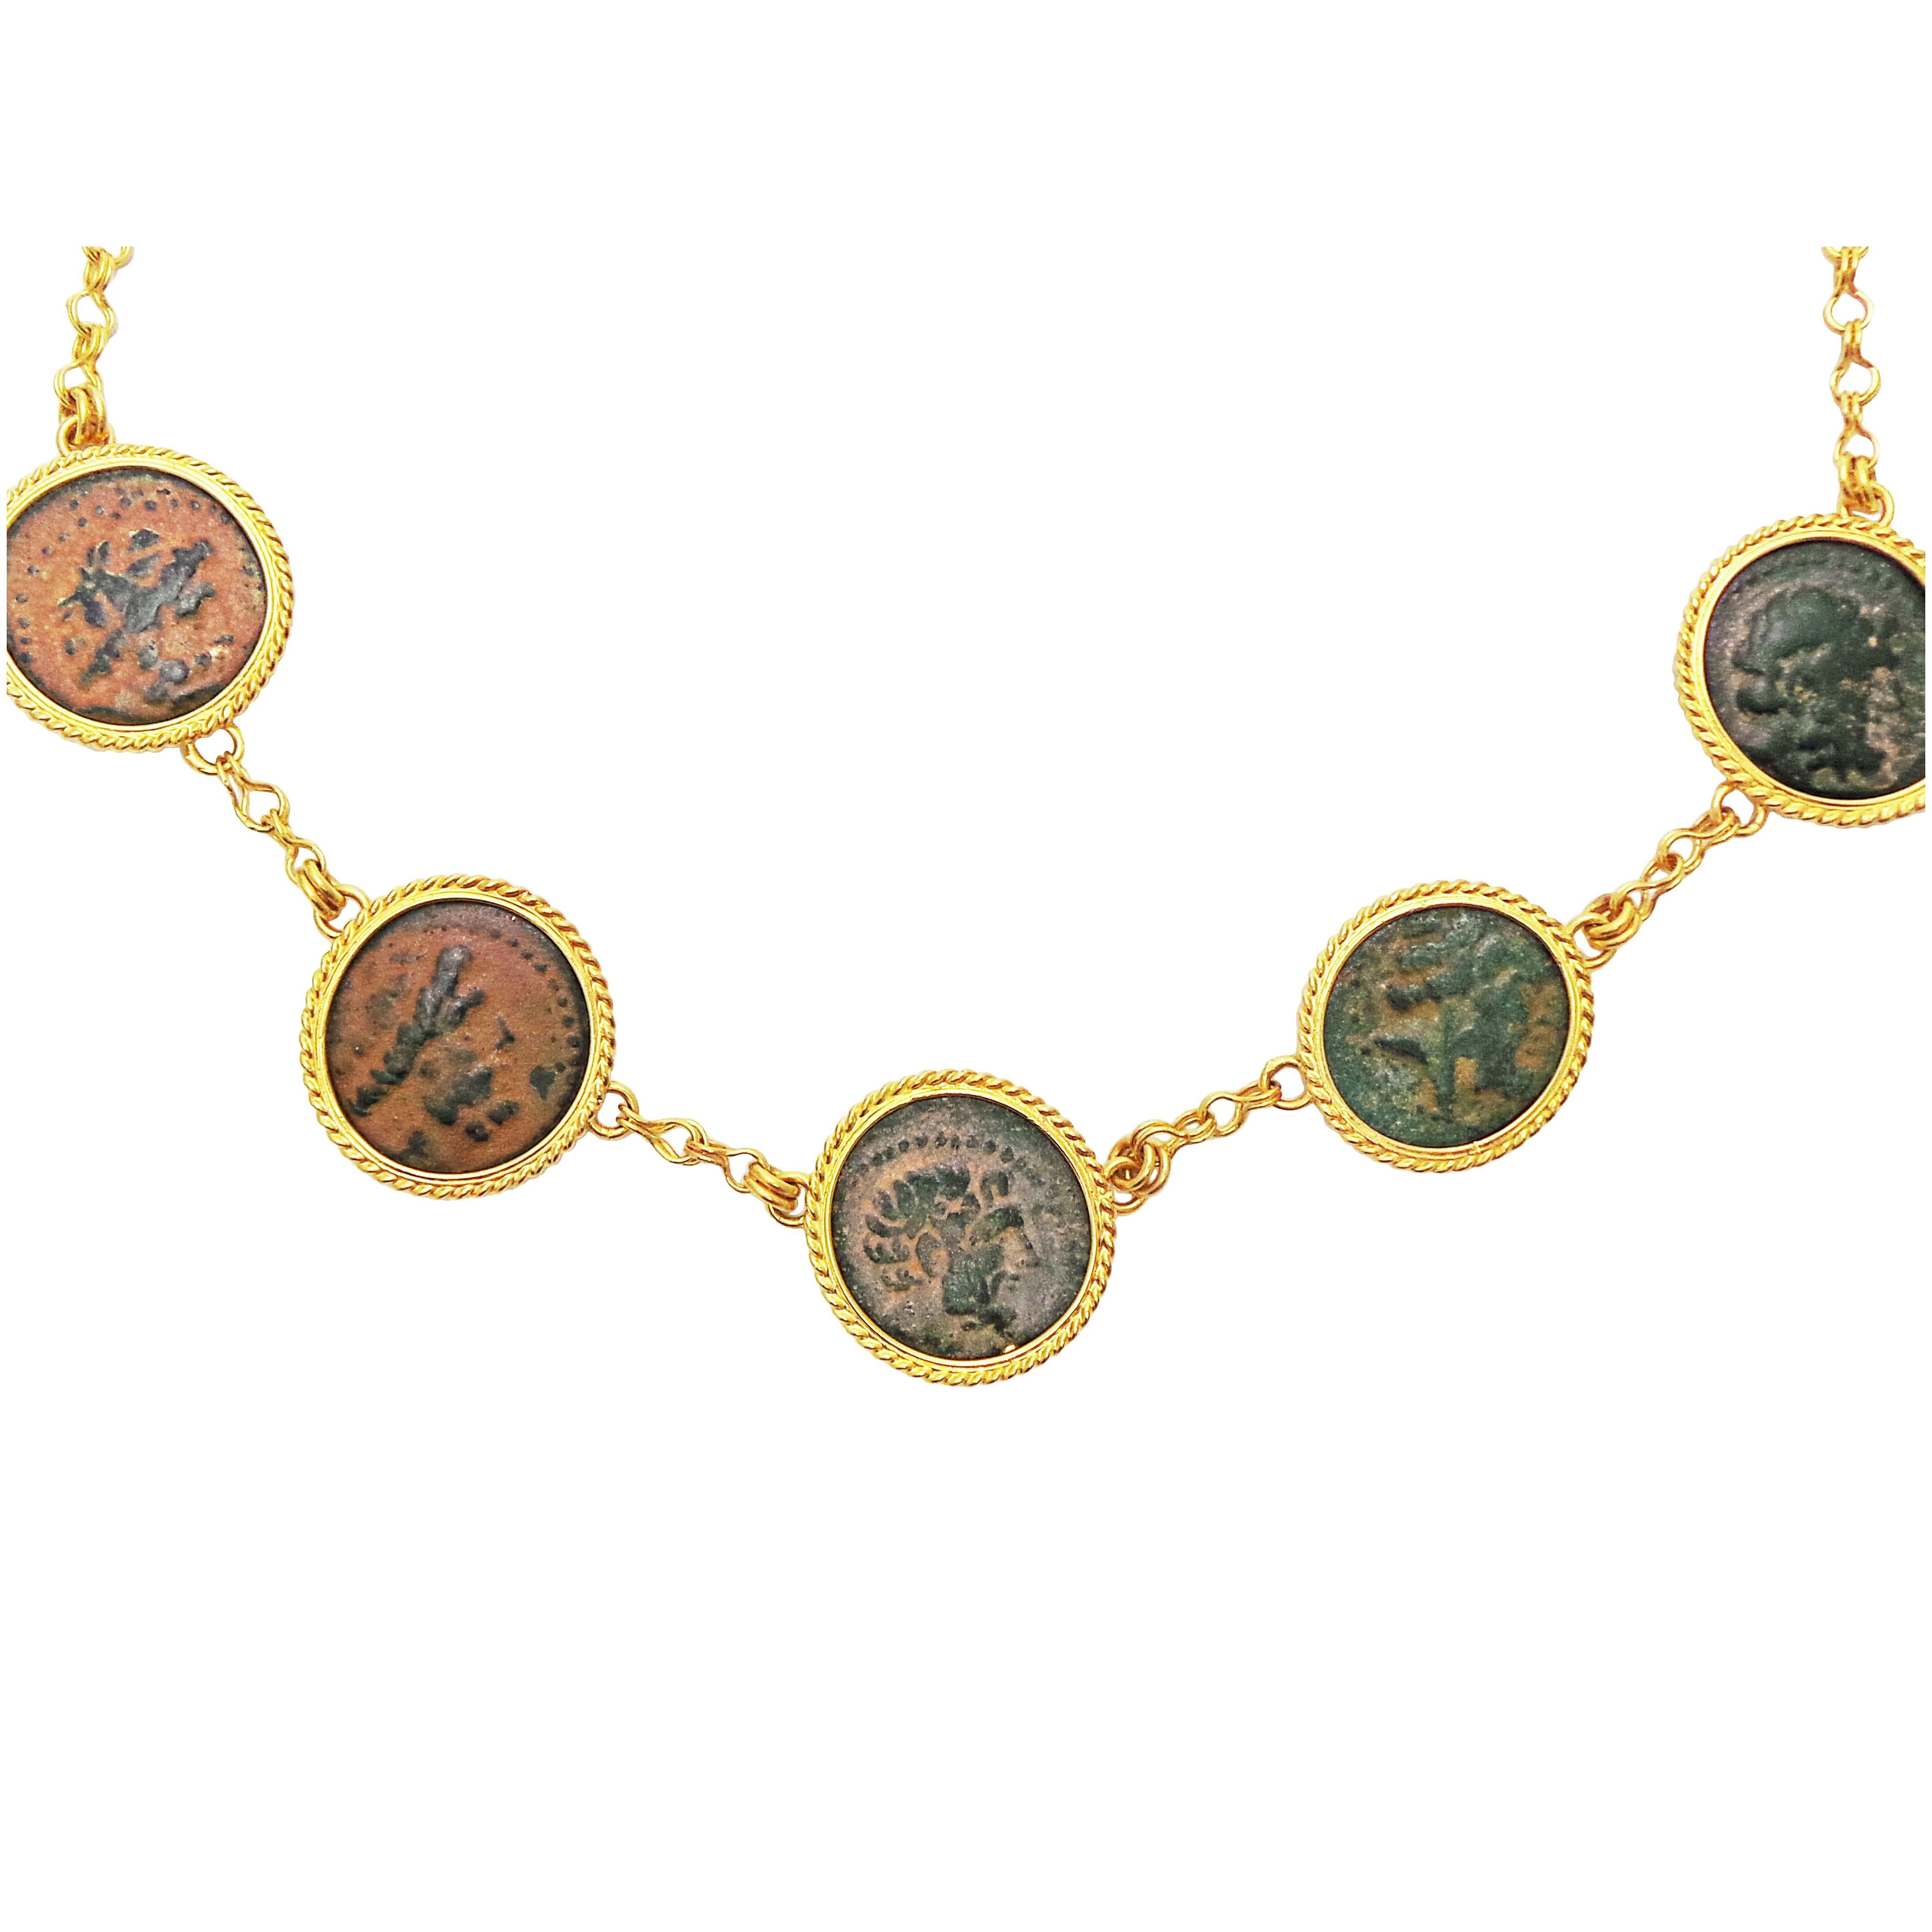 Cinq authentiques pièces de monnaie anciennes hellénistiques en bronze (Arados en Phénicie ; 206-140 av. J.-C.) serties dans des bague-cordes en or jaune 22k.  Chaque pièce est fixée dans une chaîne artisanale jaune 22k. Bien que ces cinq pièces